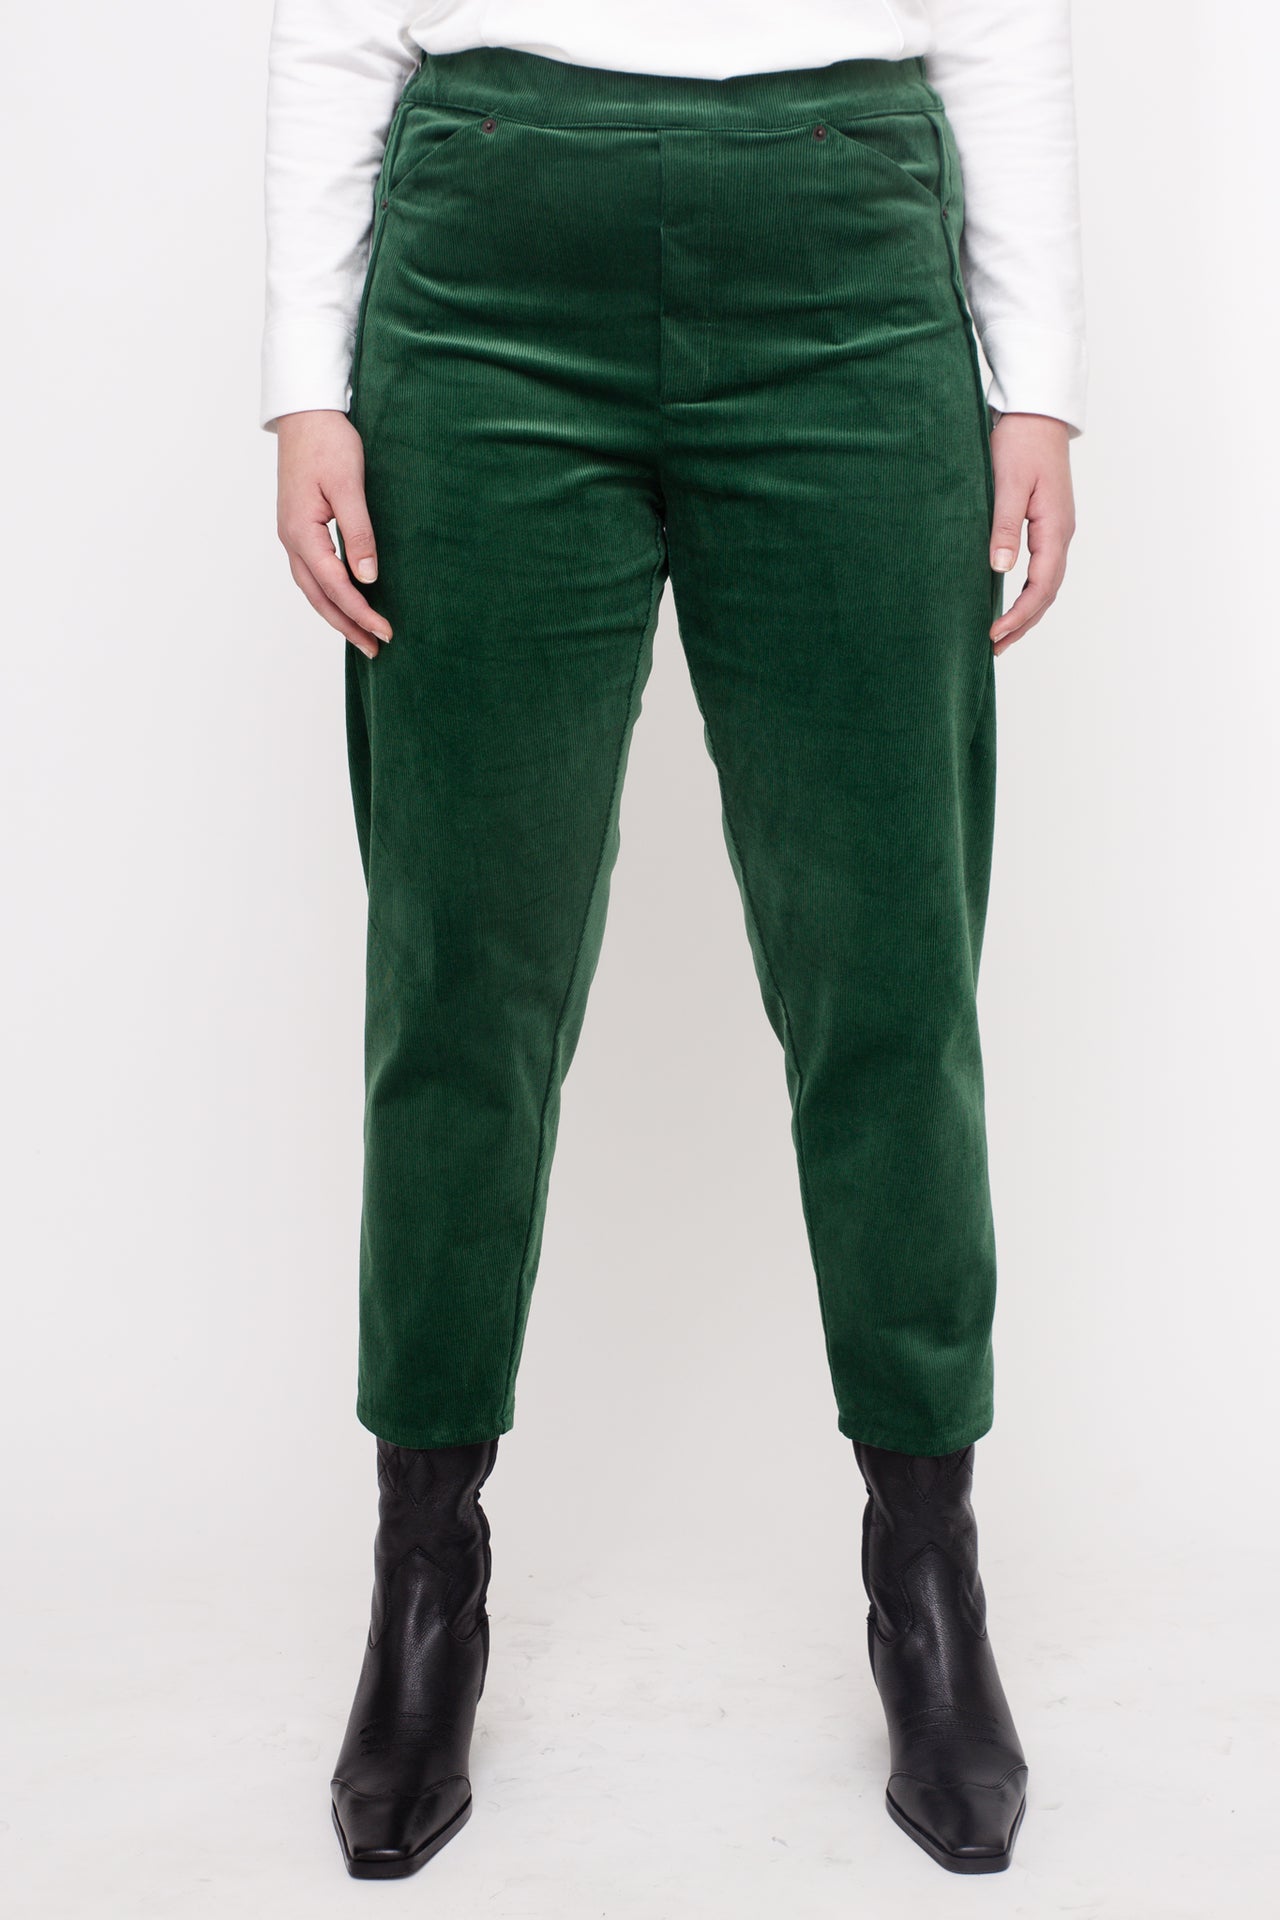 MARTIN Pants W24 (44-50) - Green Corduroy